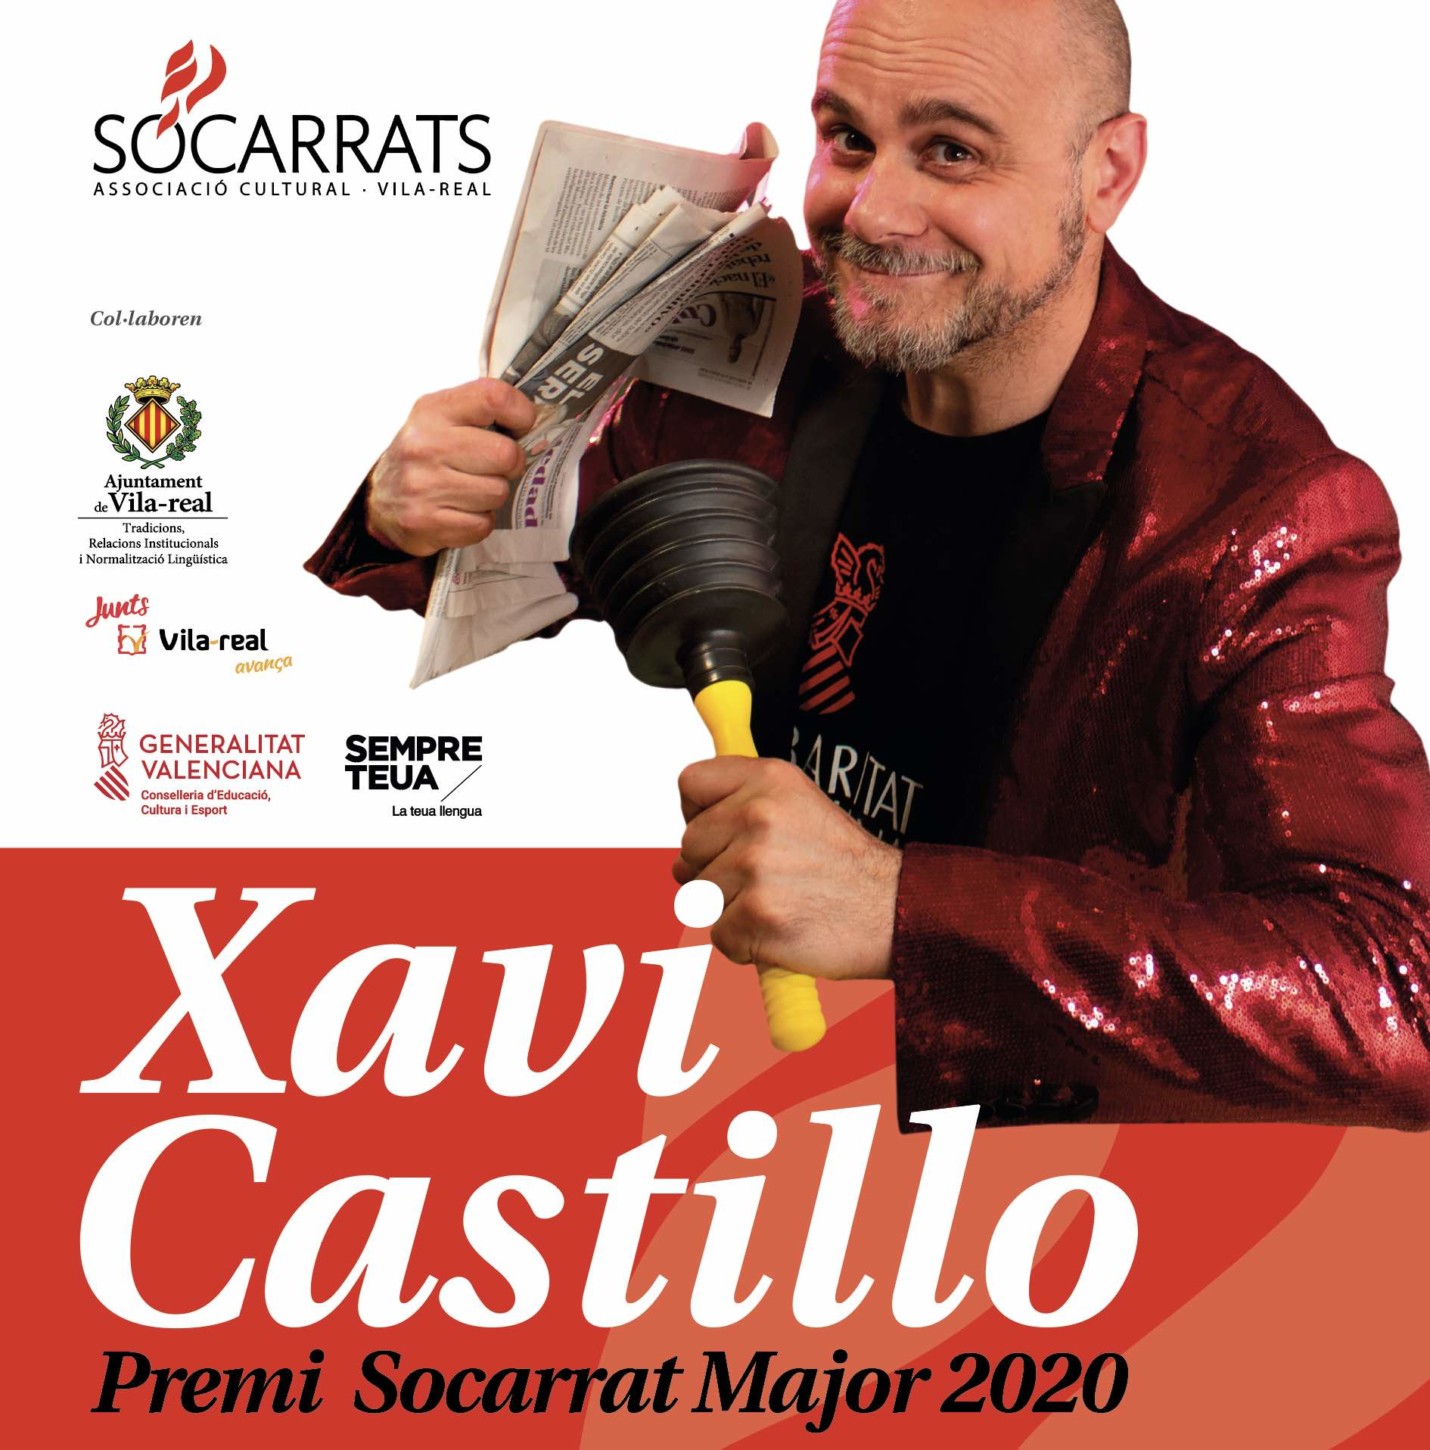 Socarrat Major 2020: Xavi Castillo